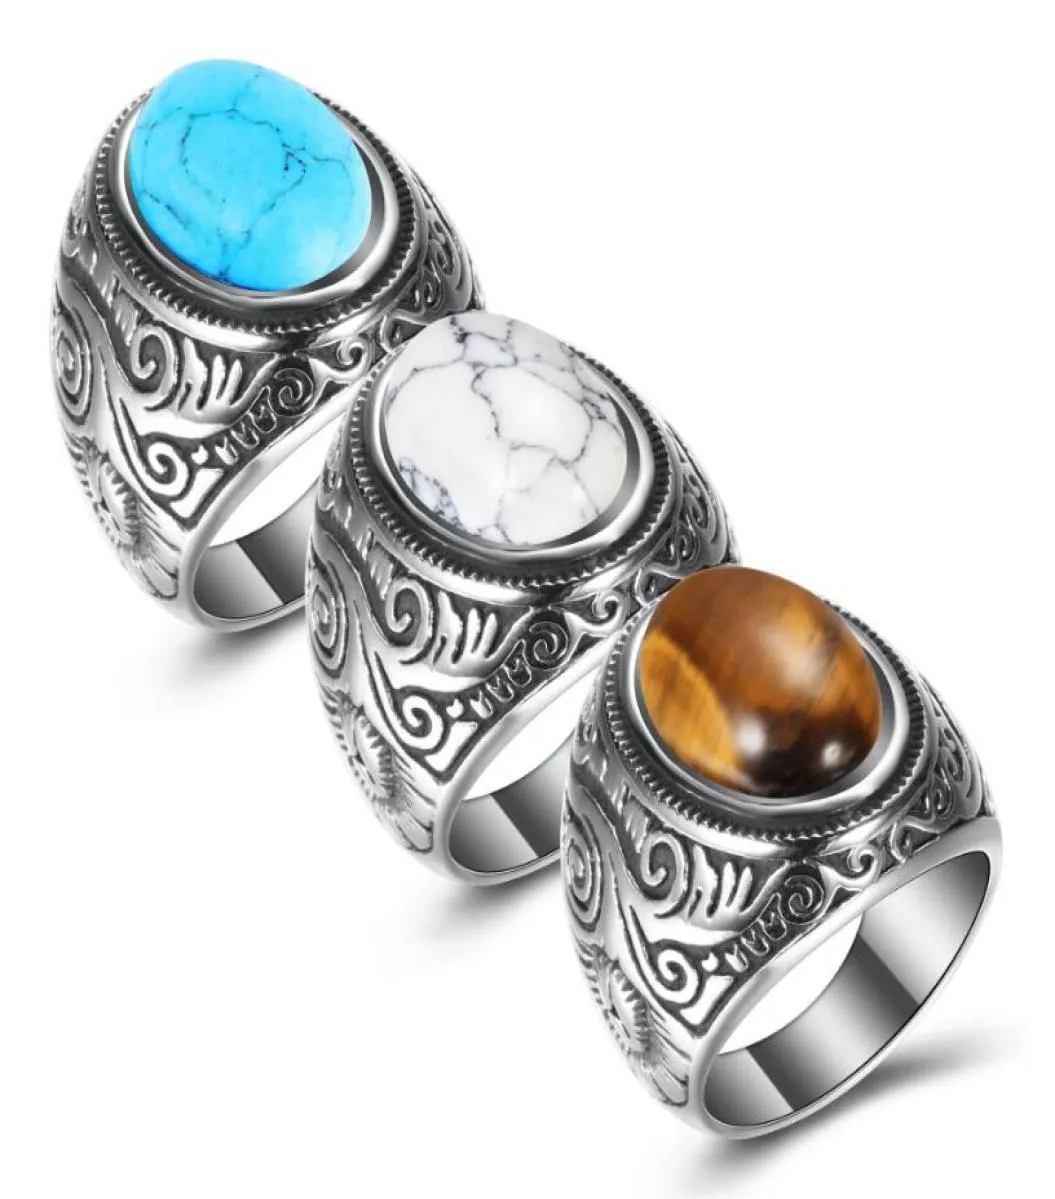 Topkwaliteit roestvrij staal turquoise ringen voor mannen vrouwen vintage retro oud zilver punk titanium stalen ringen mode je5566157